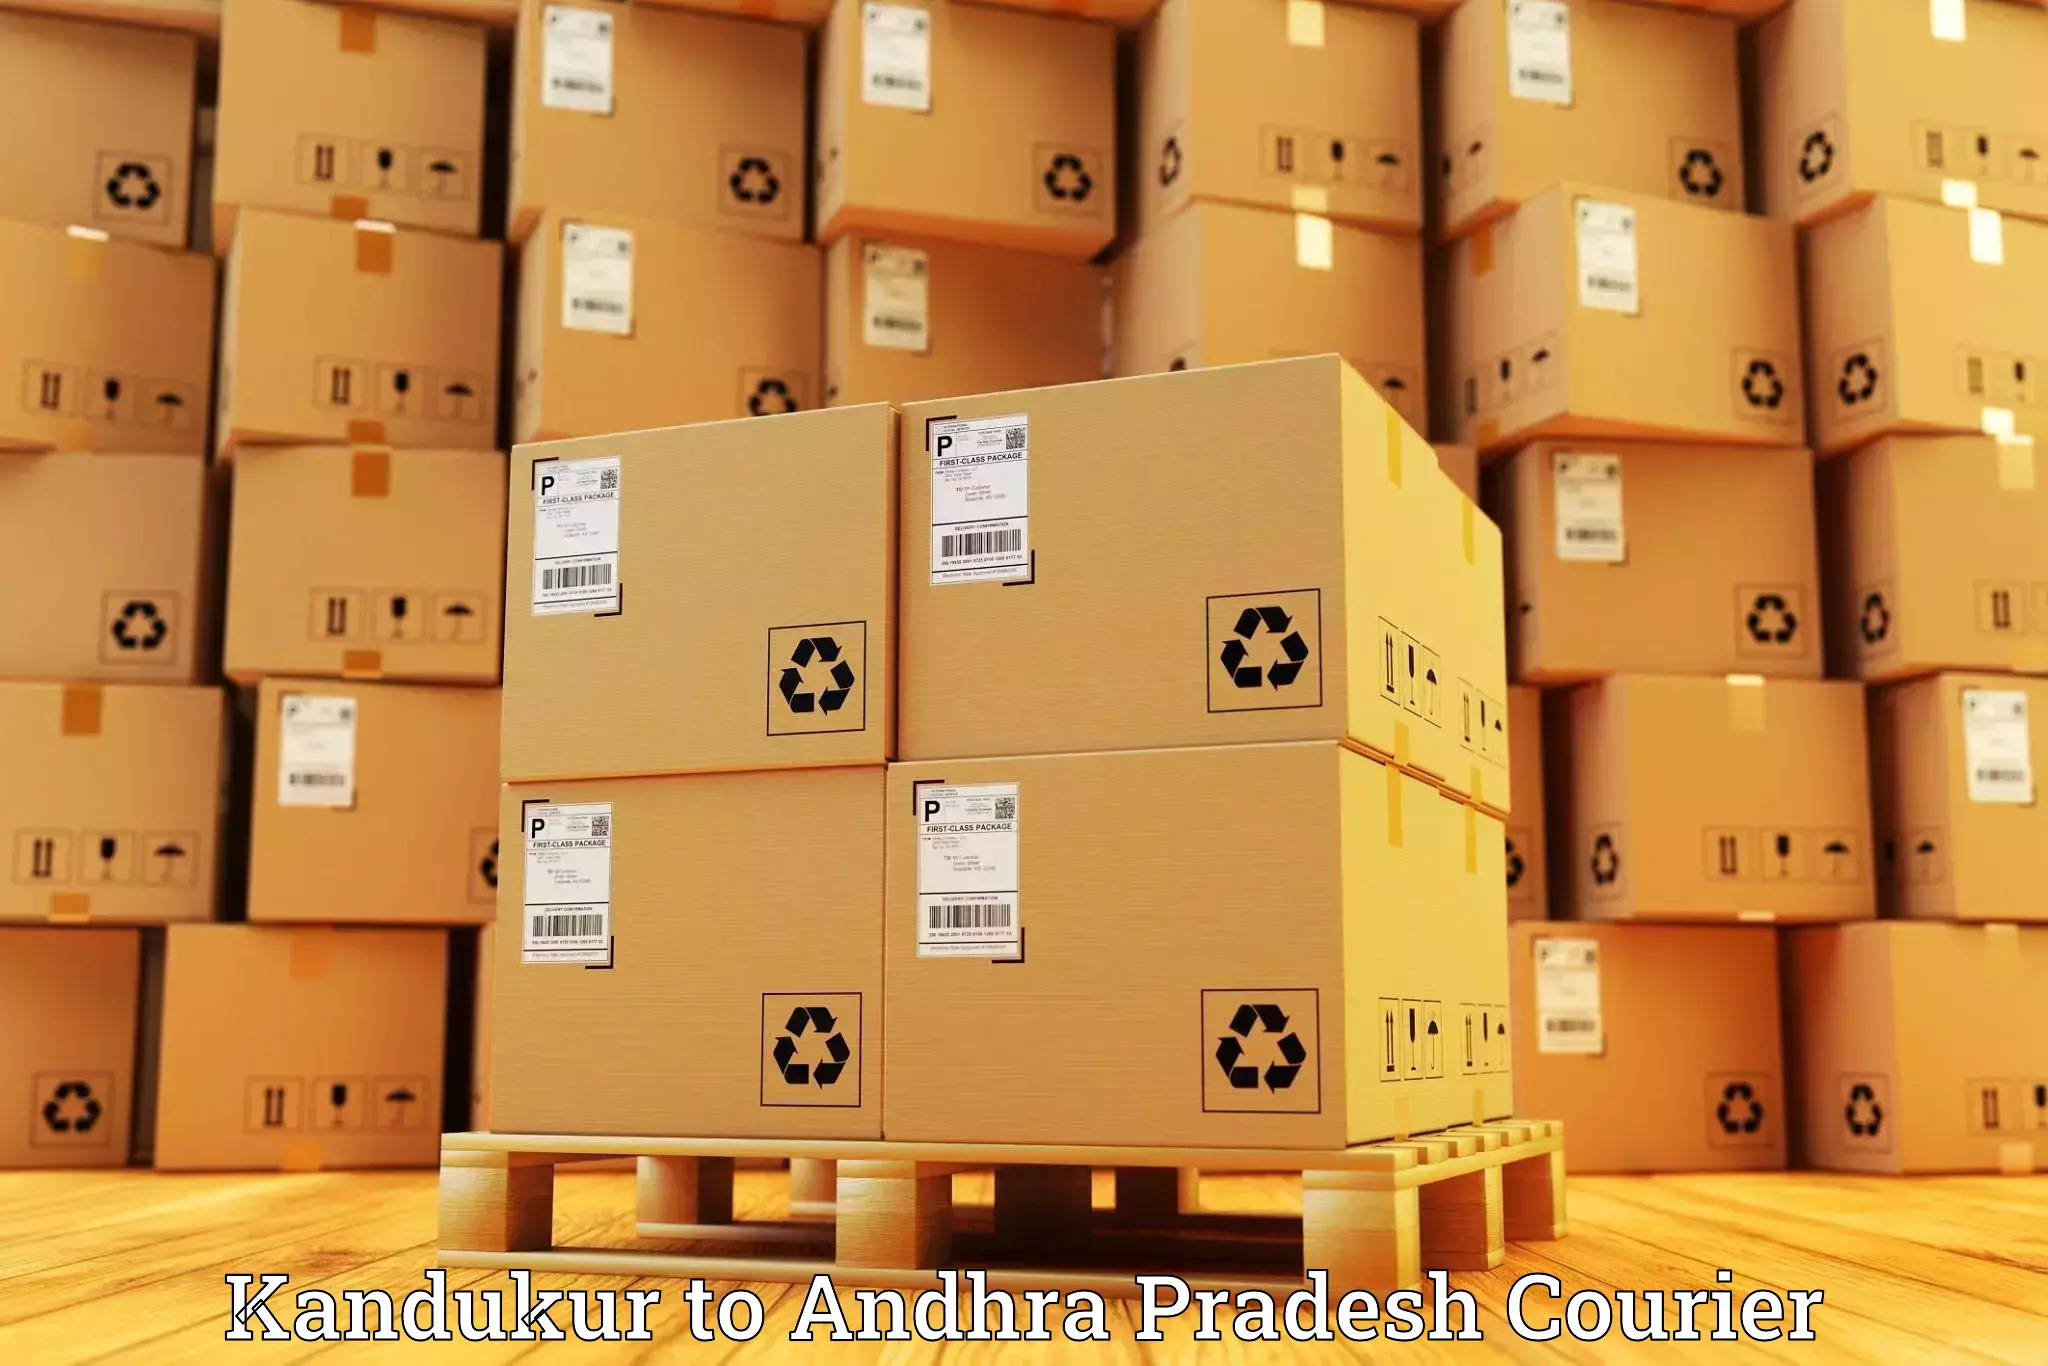 Express postal services Kandukur to Hindupur